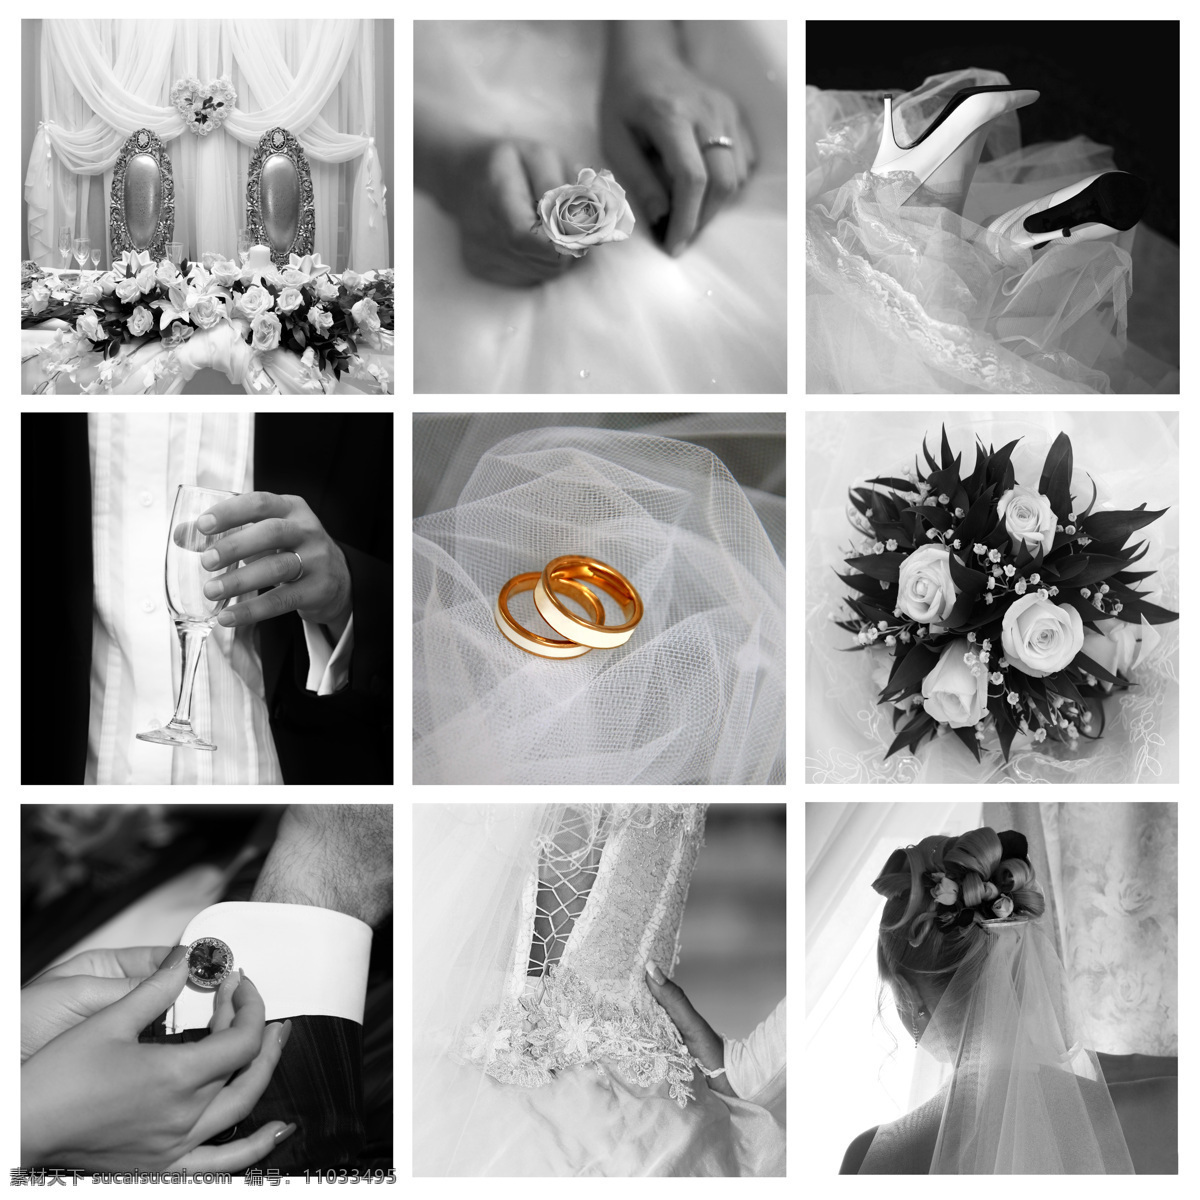 婚礼戒指 结婚戒指 戒指 婚礼 钻戒 温馨 浪漫 珠宝服饰 生活百科 白色